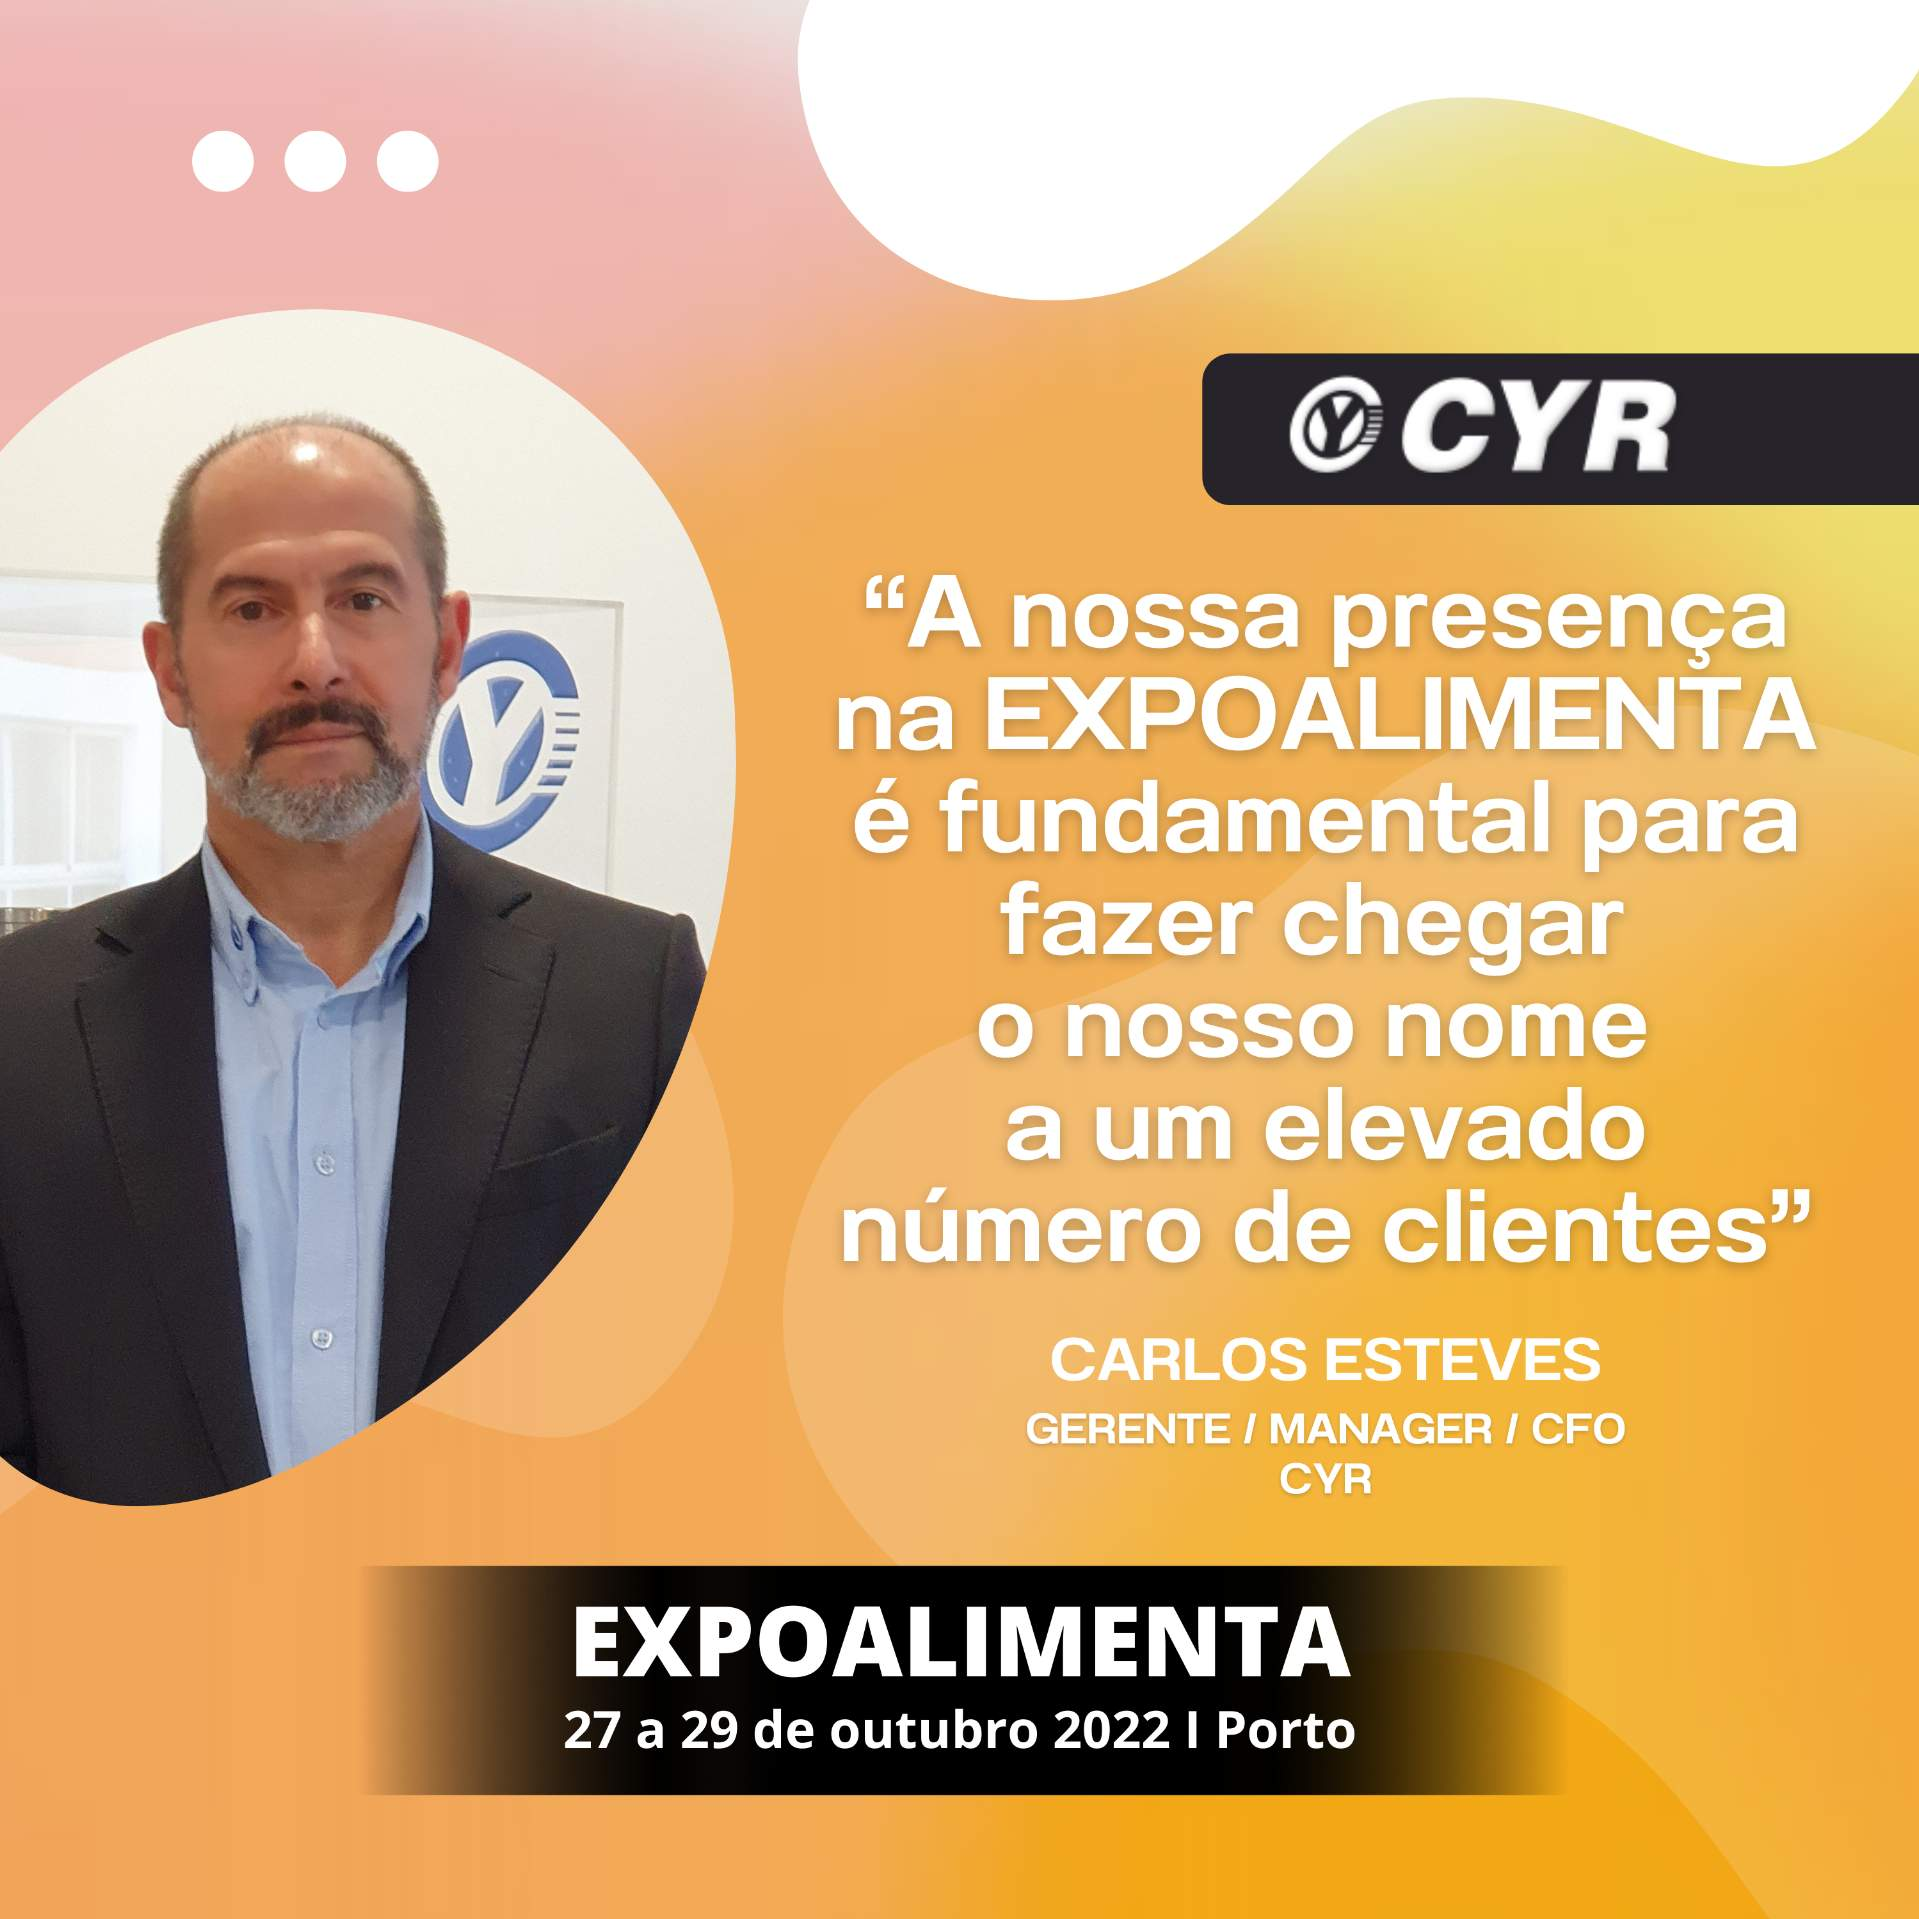 CYR: "Nuestra presencia en EXPOALIMENTA es fundamental para dar a conocer nuestro nombre a un gran número de clientes".